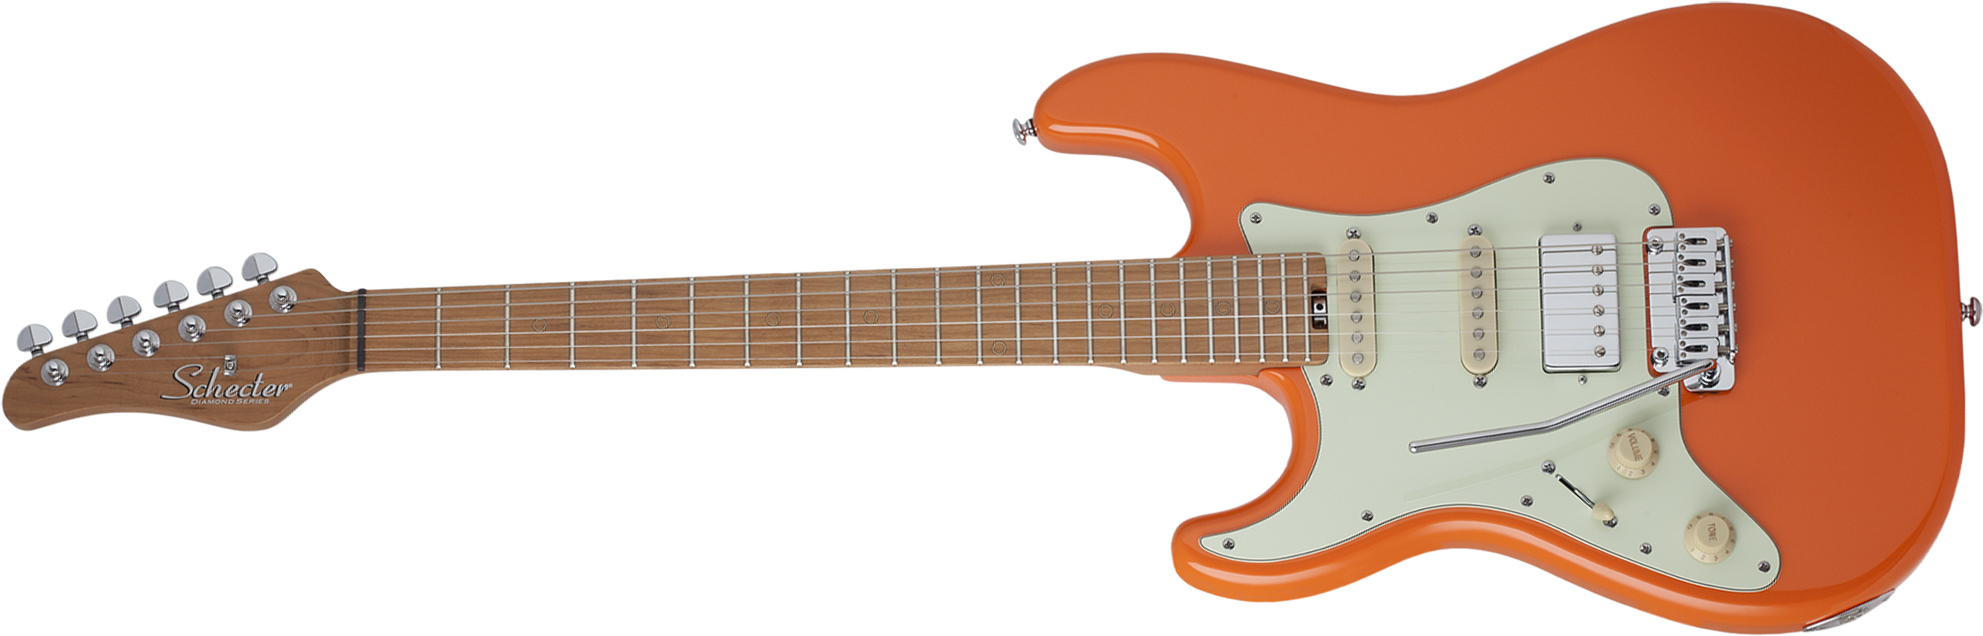 Schecter Nick Johnston Traditional Lh Gaucher Hss Trem Mn - Atomic Orange - Linkshandige elektrische gitaar - Main picture